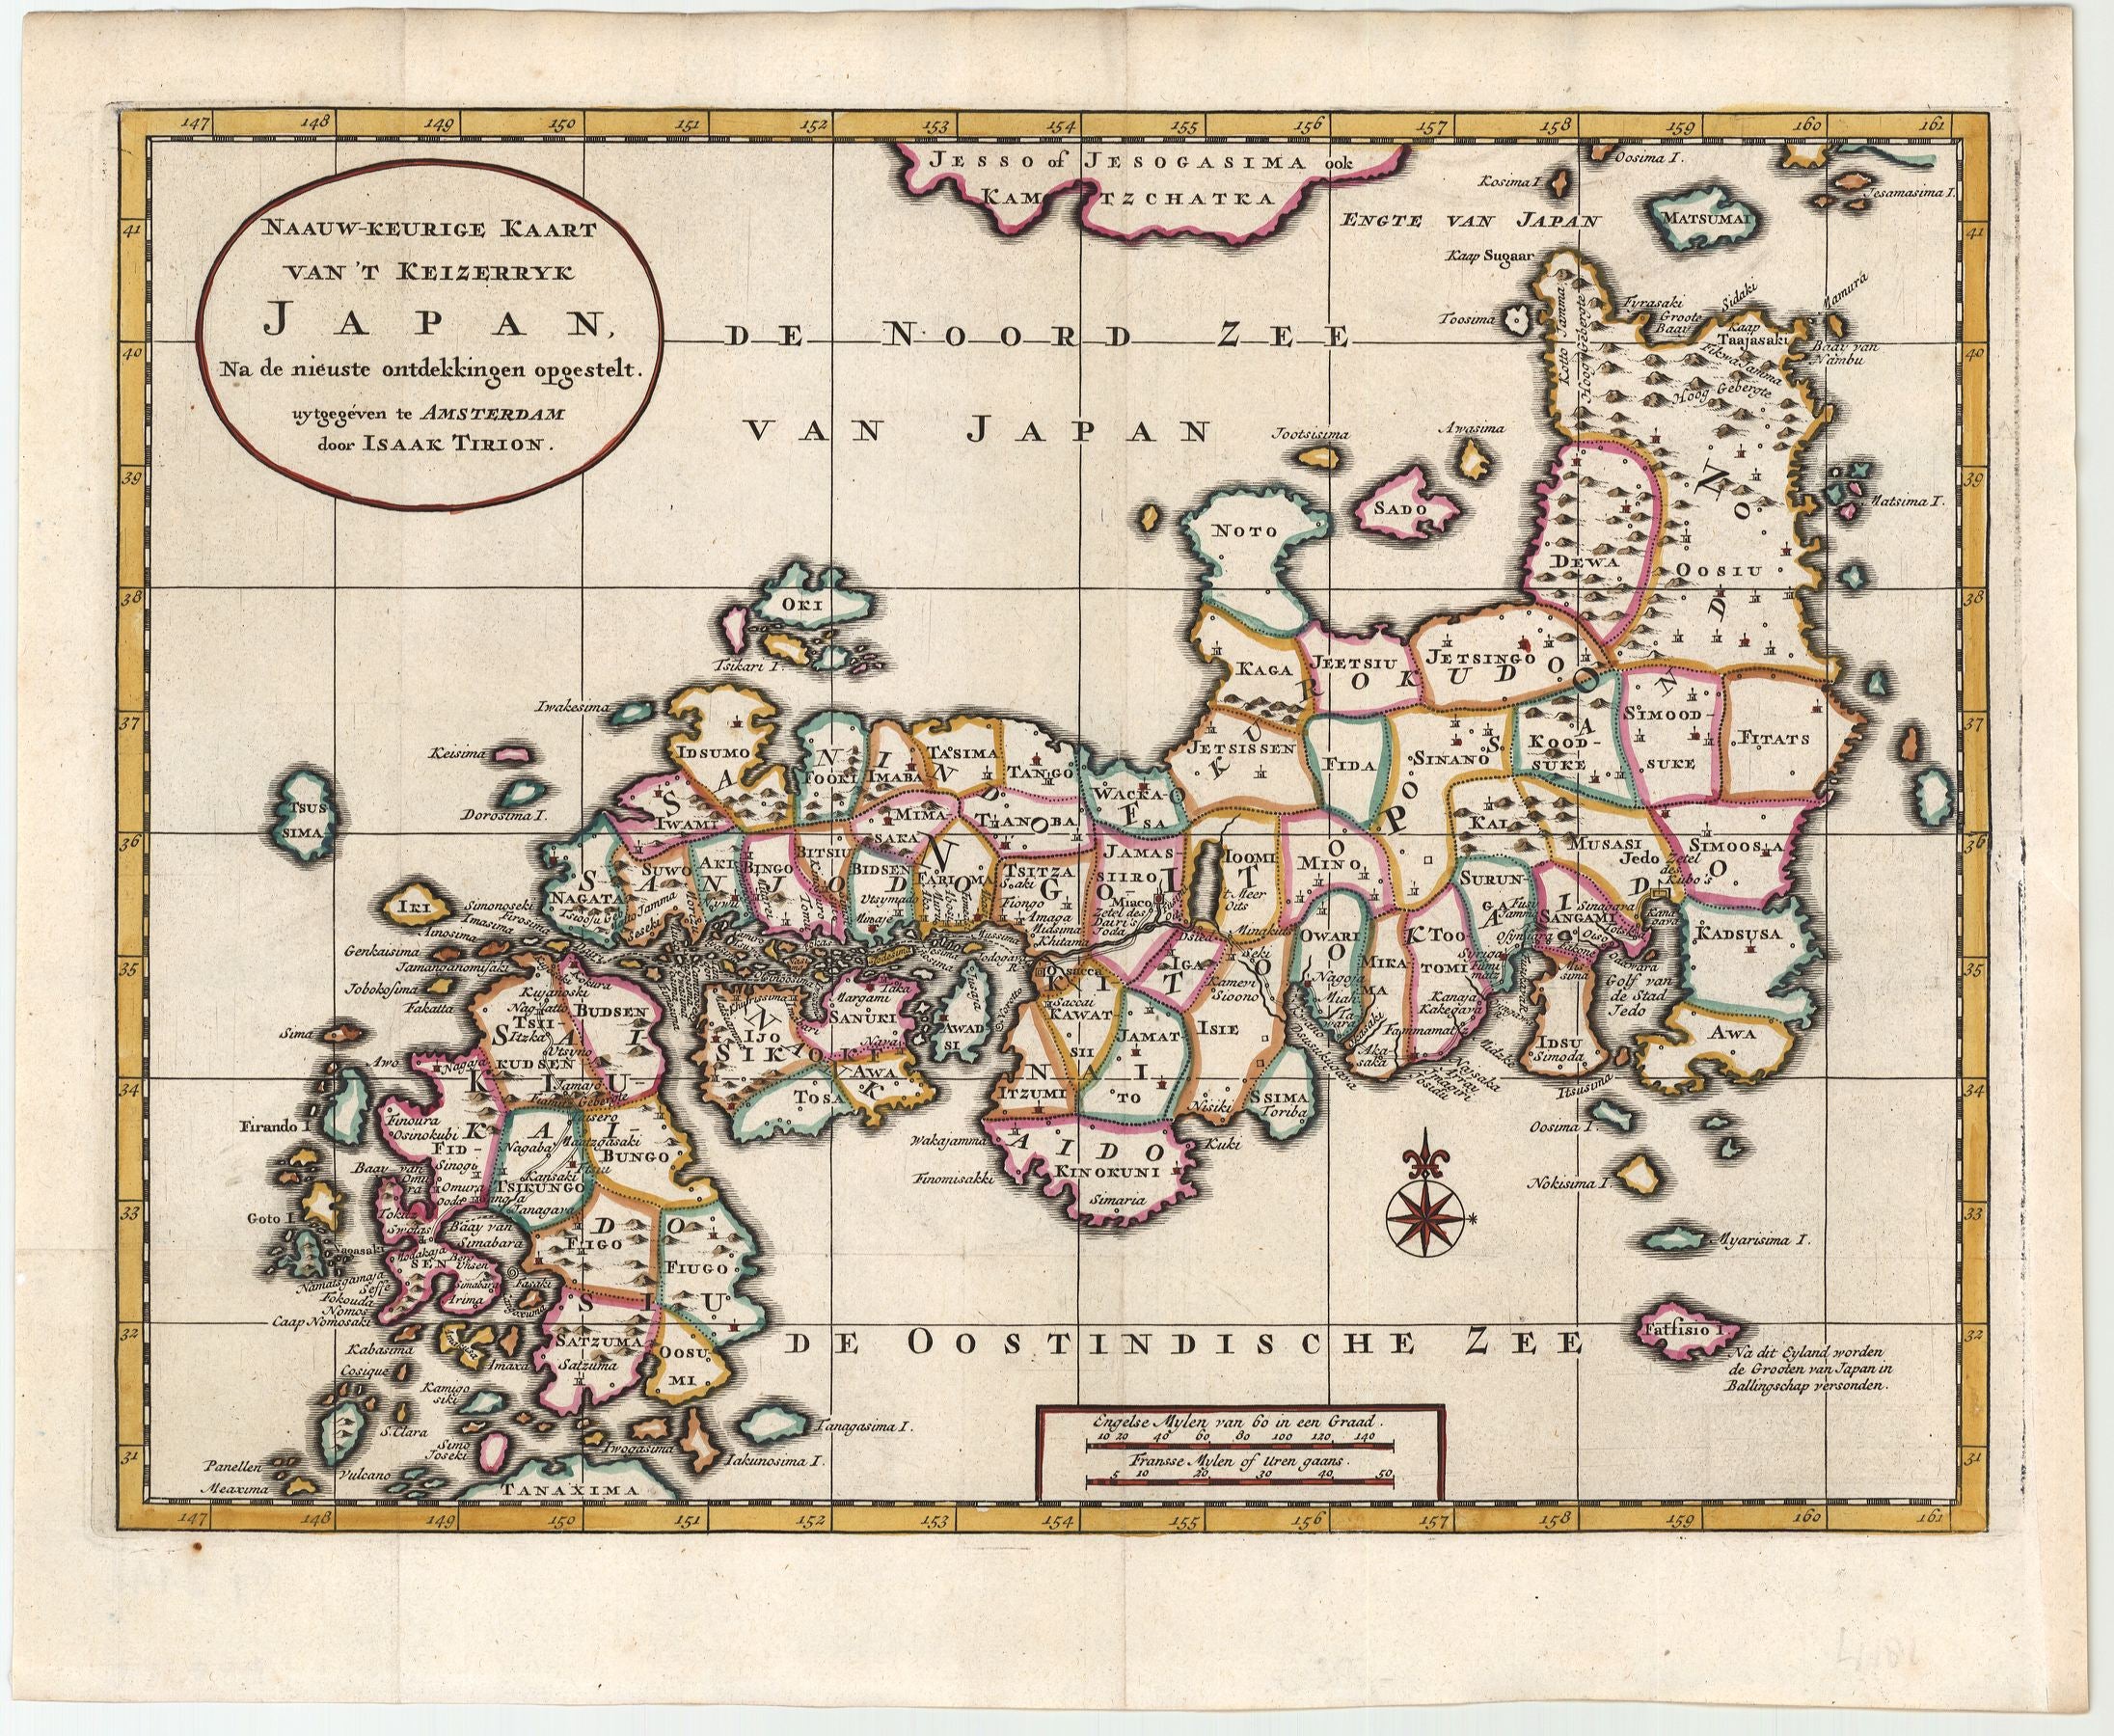 Tirion, Isaac: Naauw-Keurige Kaart van ´t Keizerryk Japan, Na de nieuste ontdekkingen opgestelt. 1728